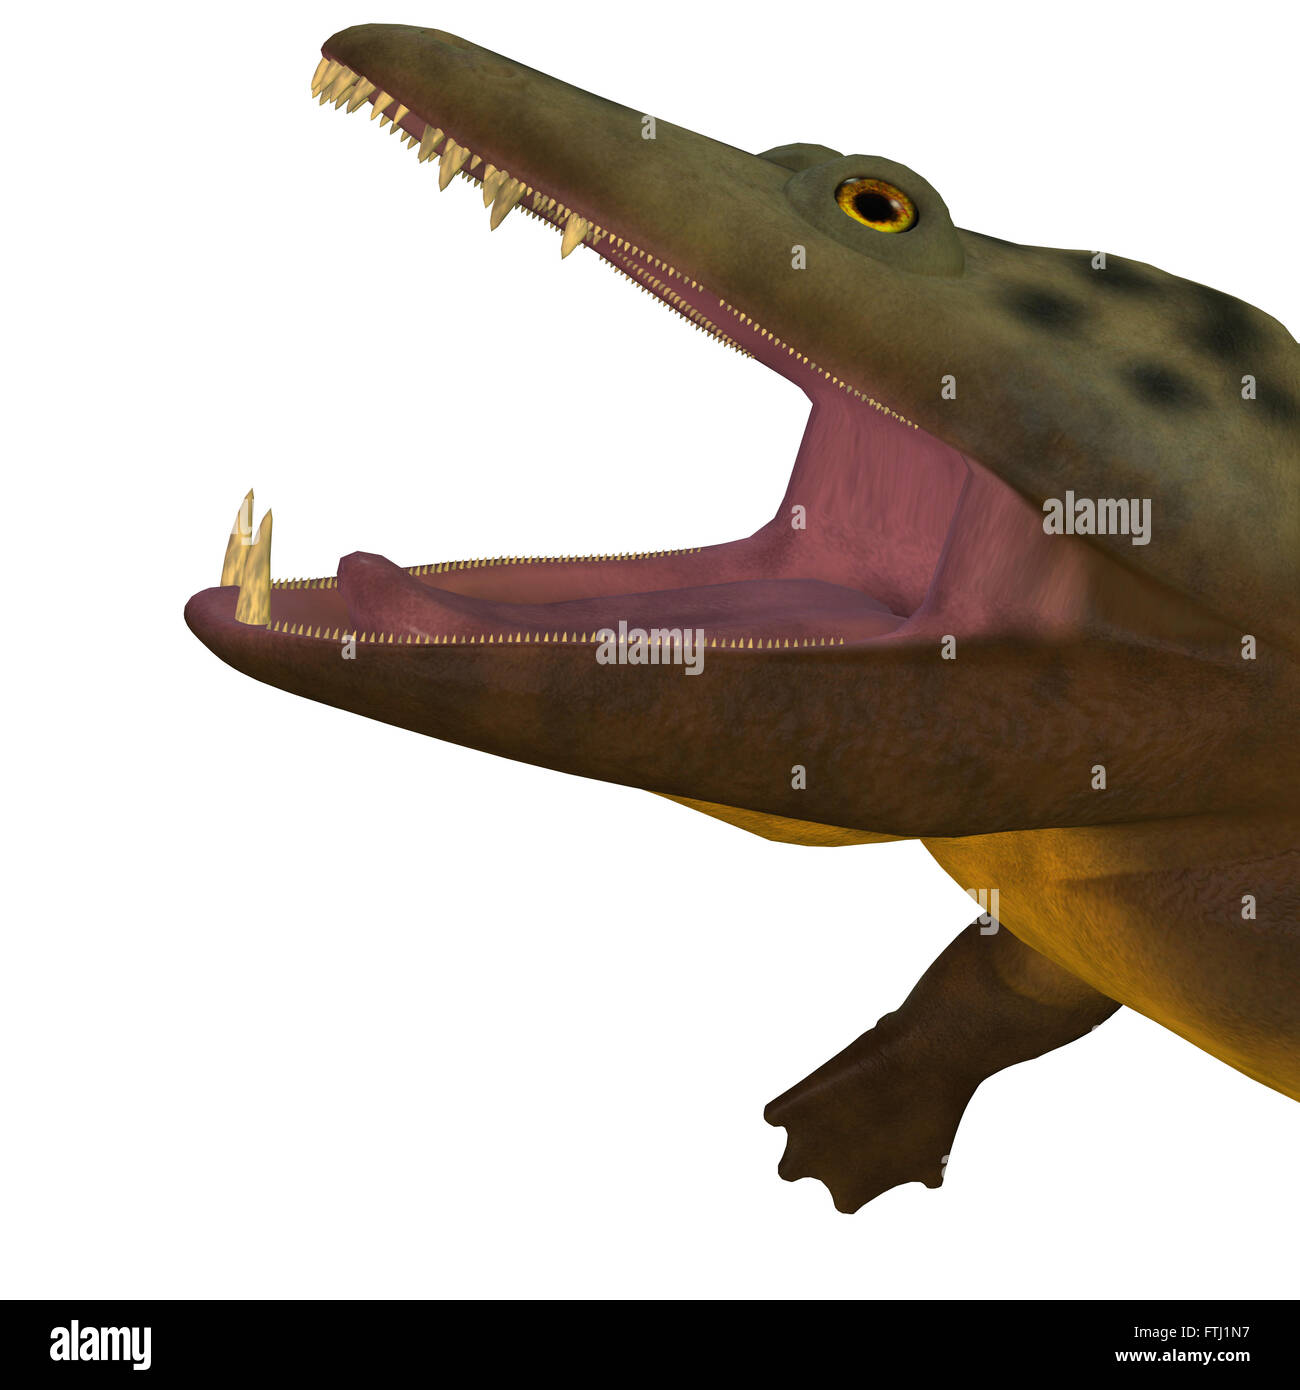 Mastodonsaurus war eine aquatische Amphibien-Tier, das in Europa während der Trias lebten. Stockfoto